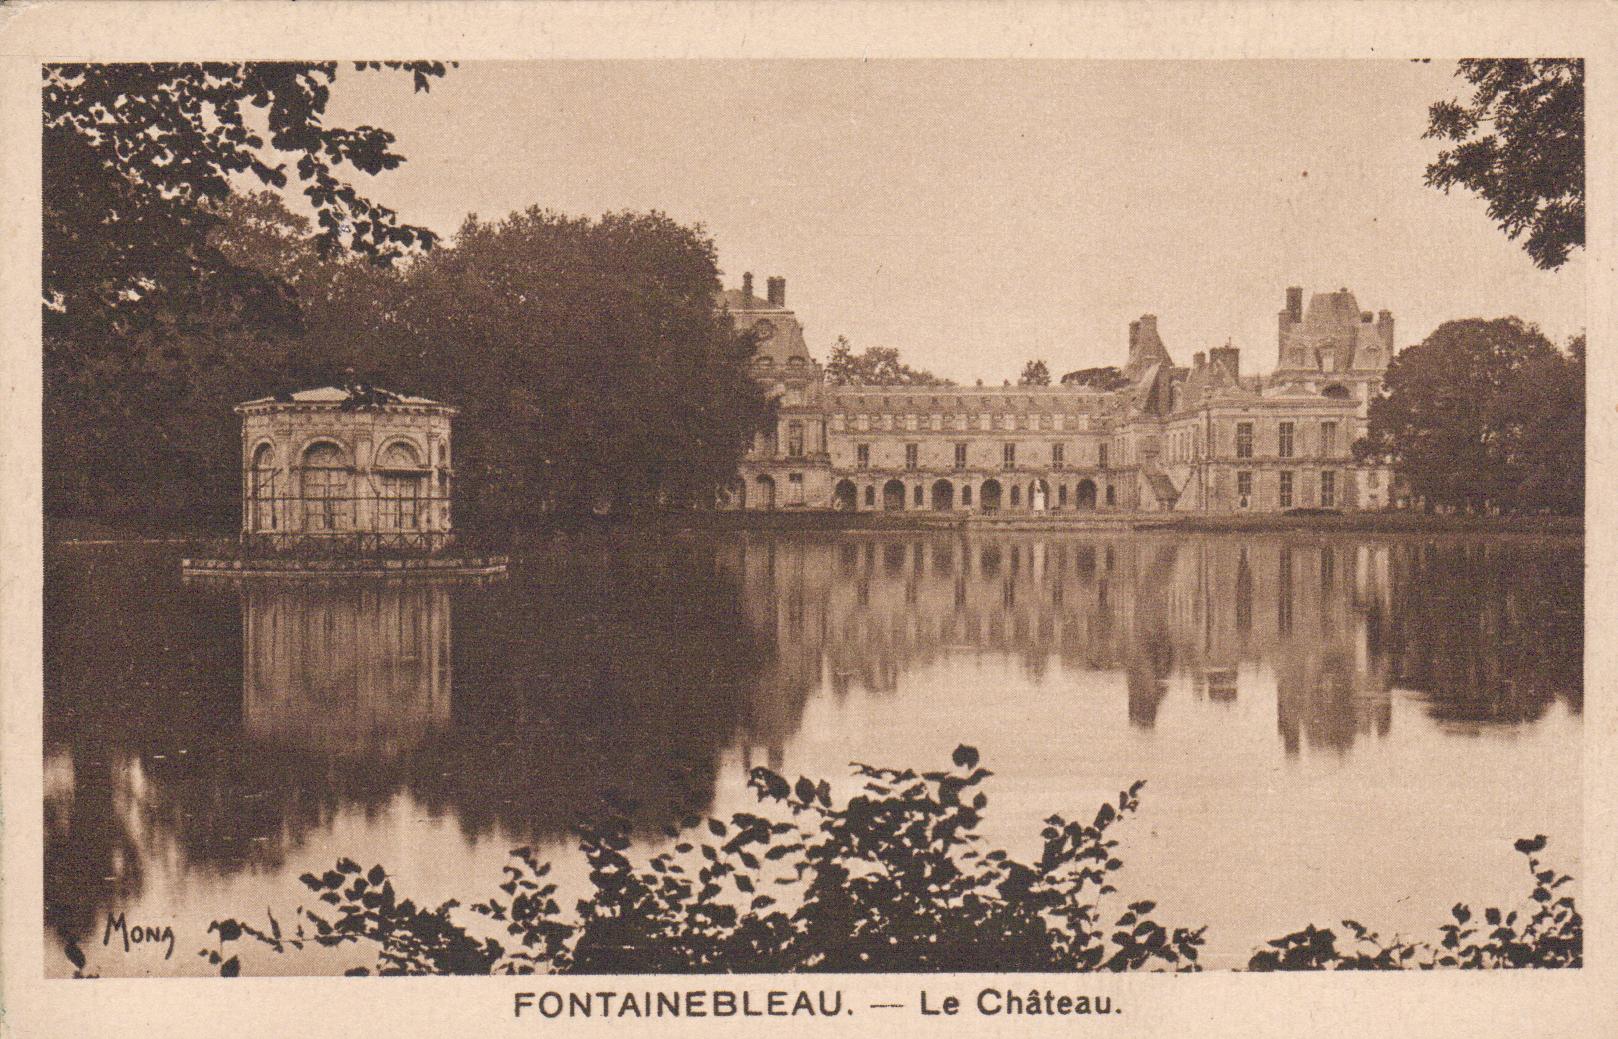 Cartes postales anciennes > CARTES POSTALES > carte postale ancienne > cartes-postales-ancienne.com Seine et marne 77 Fontainebleau